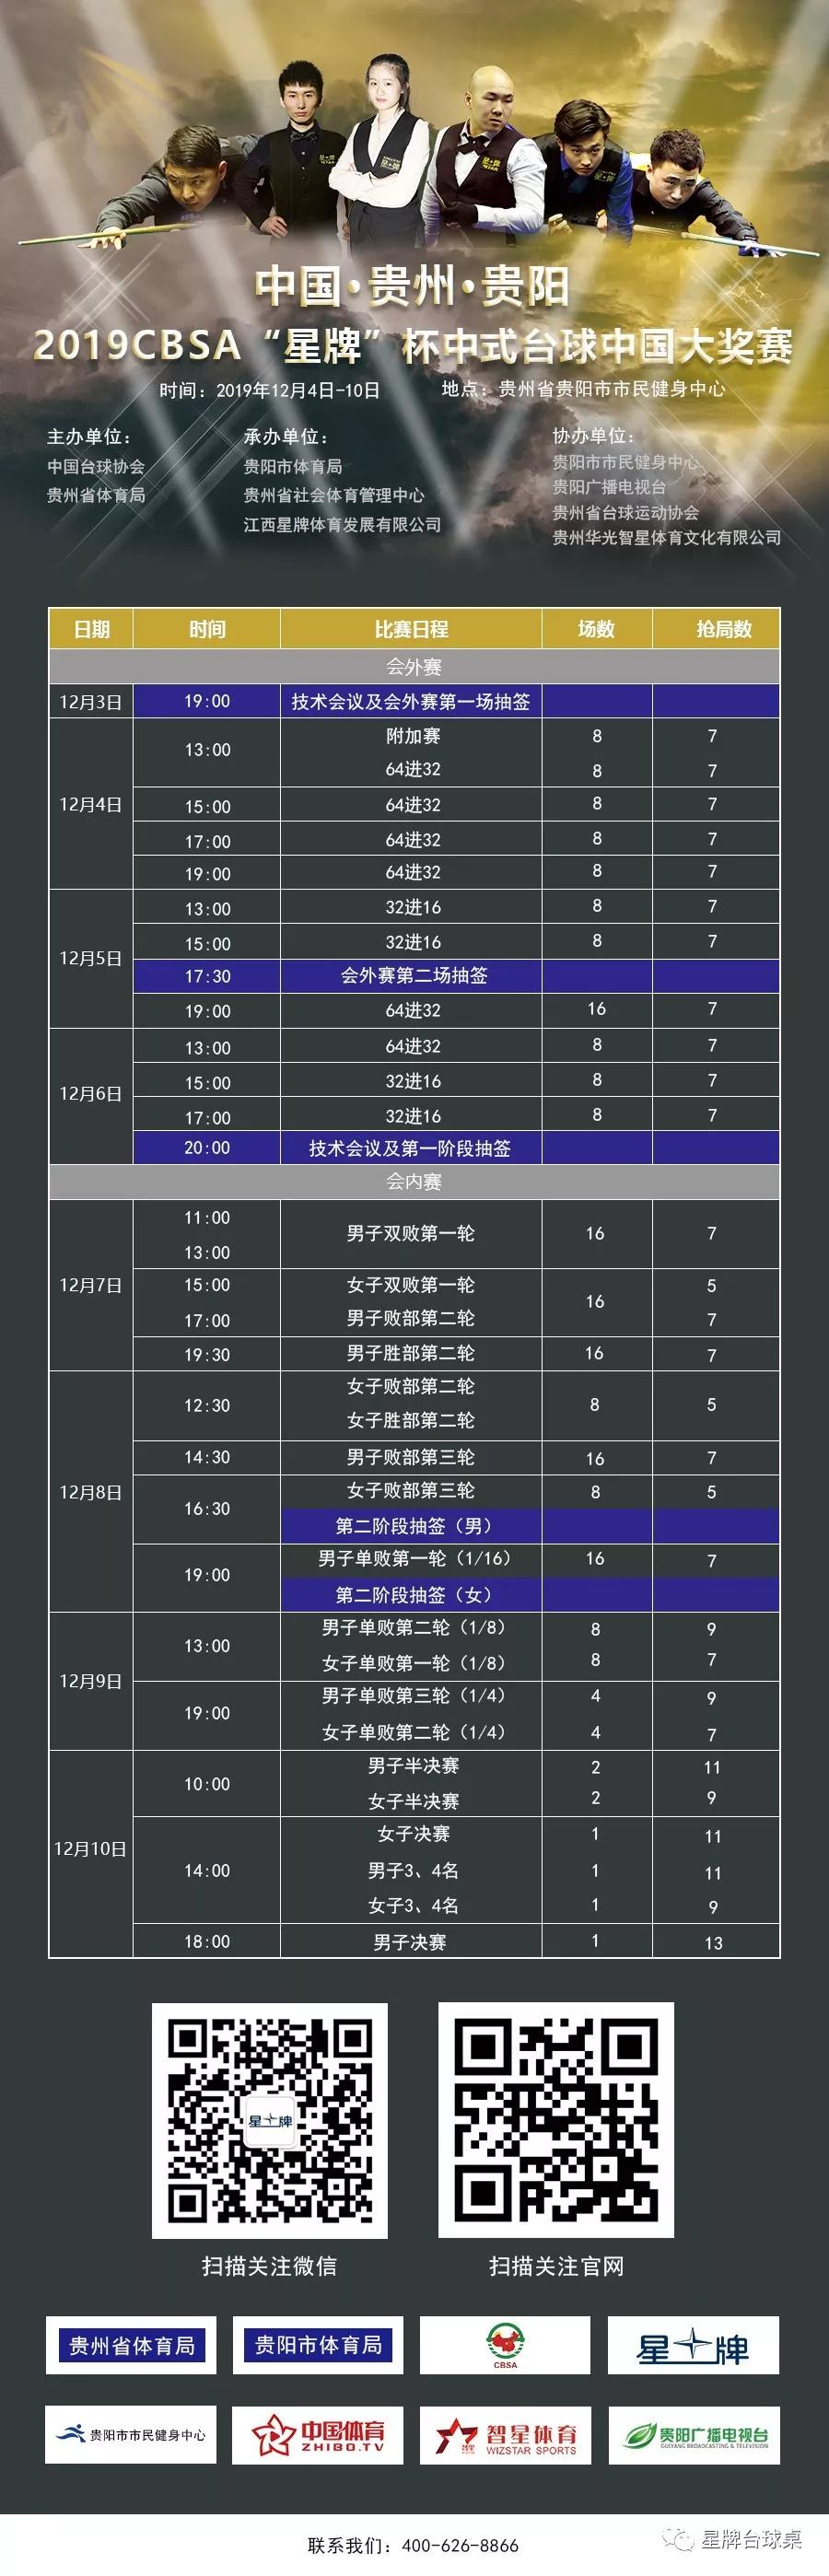 贵阳2019CBSA“星牌”杯中式台球中国大奖赛赛程时间表